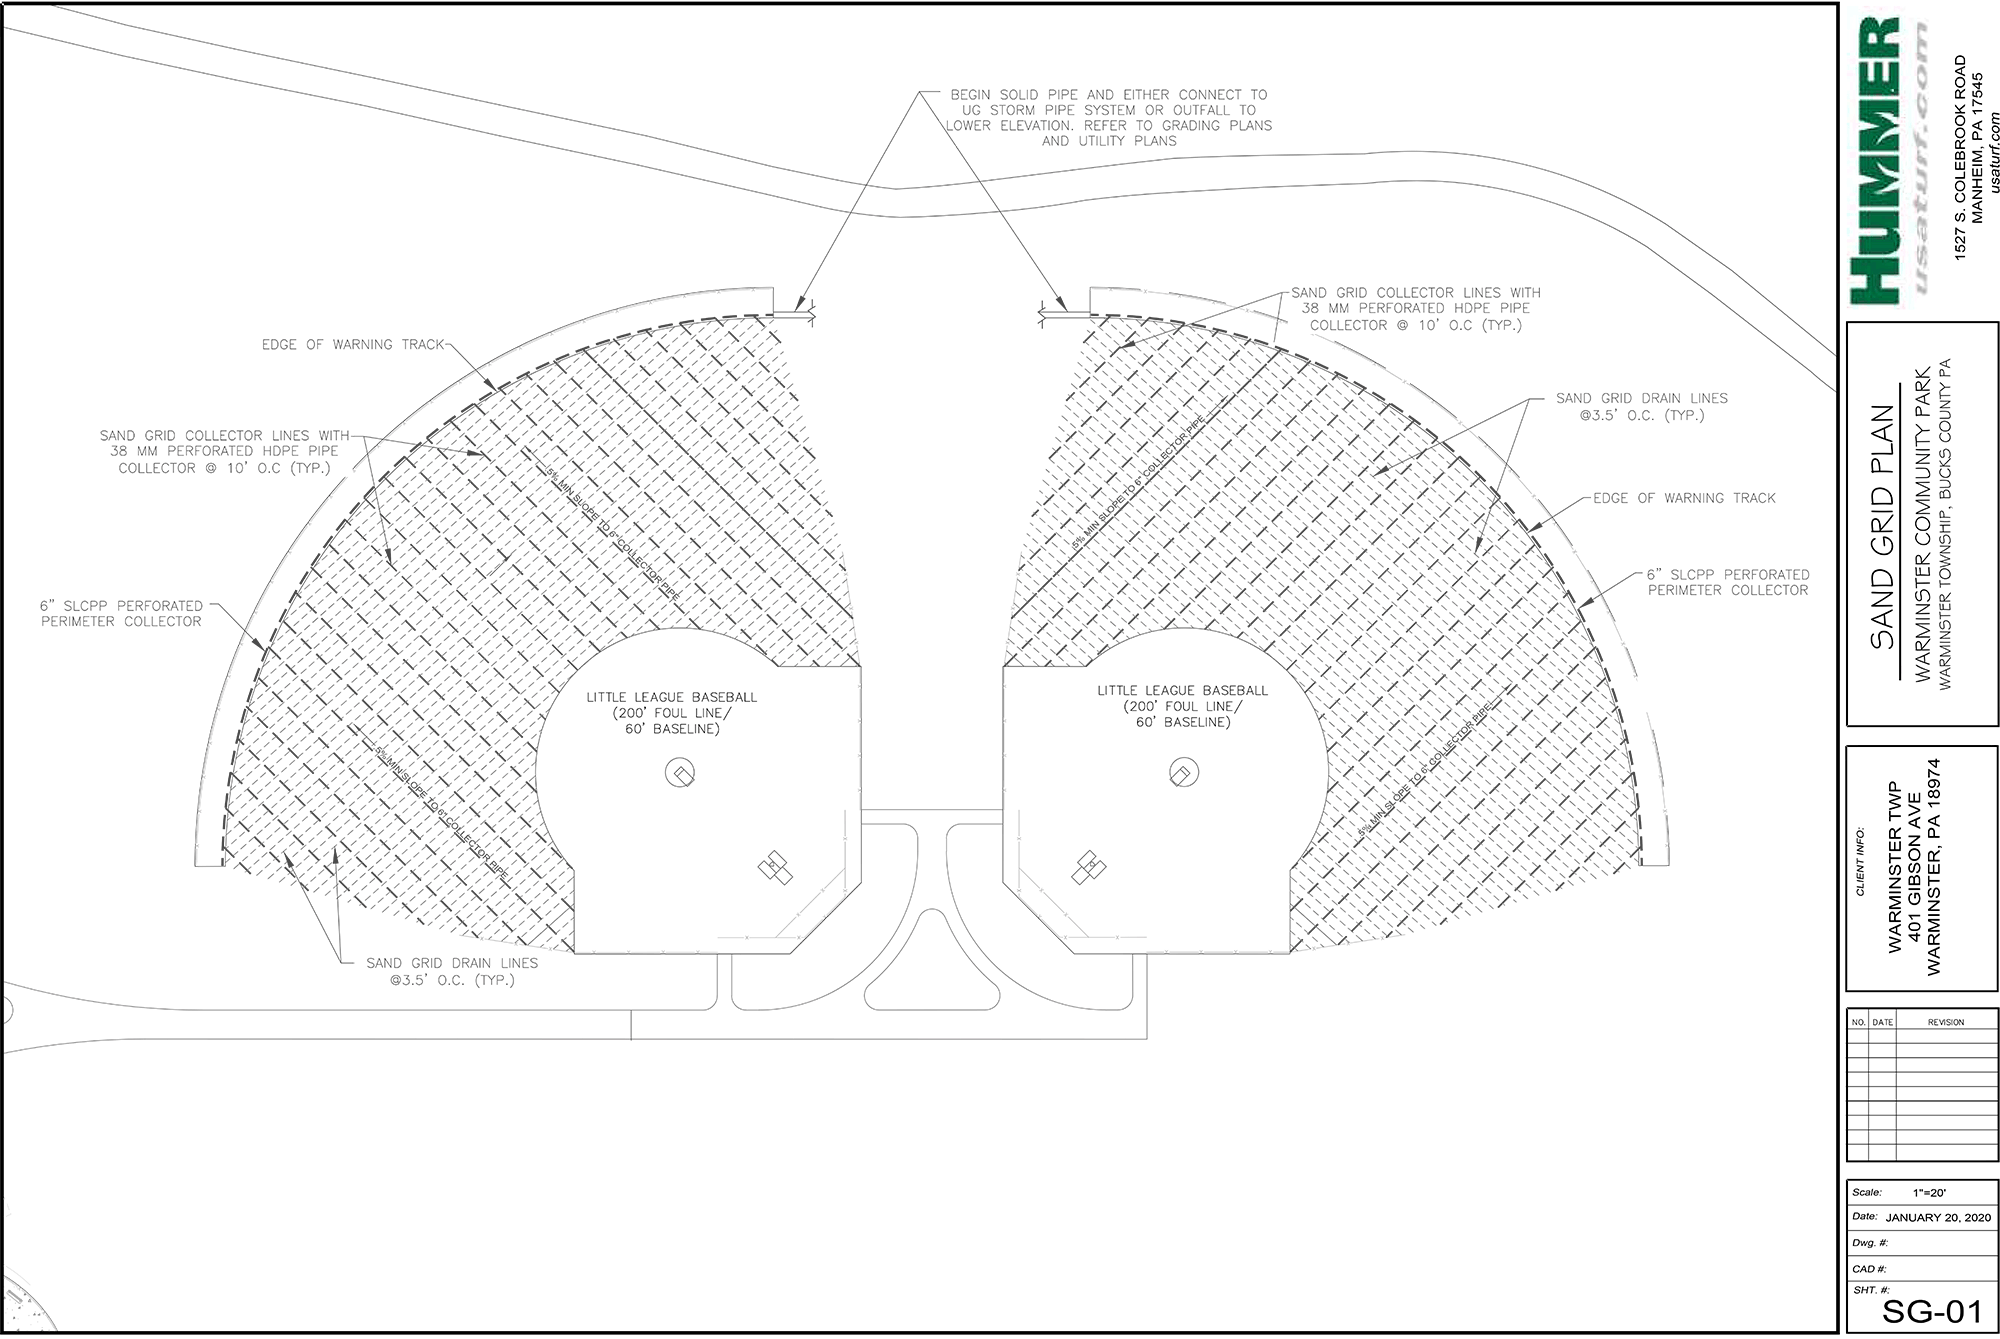 Sand Grid Design Diagram